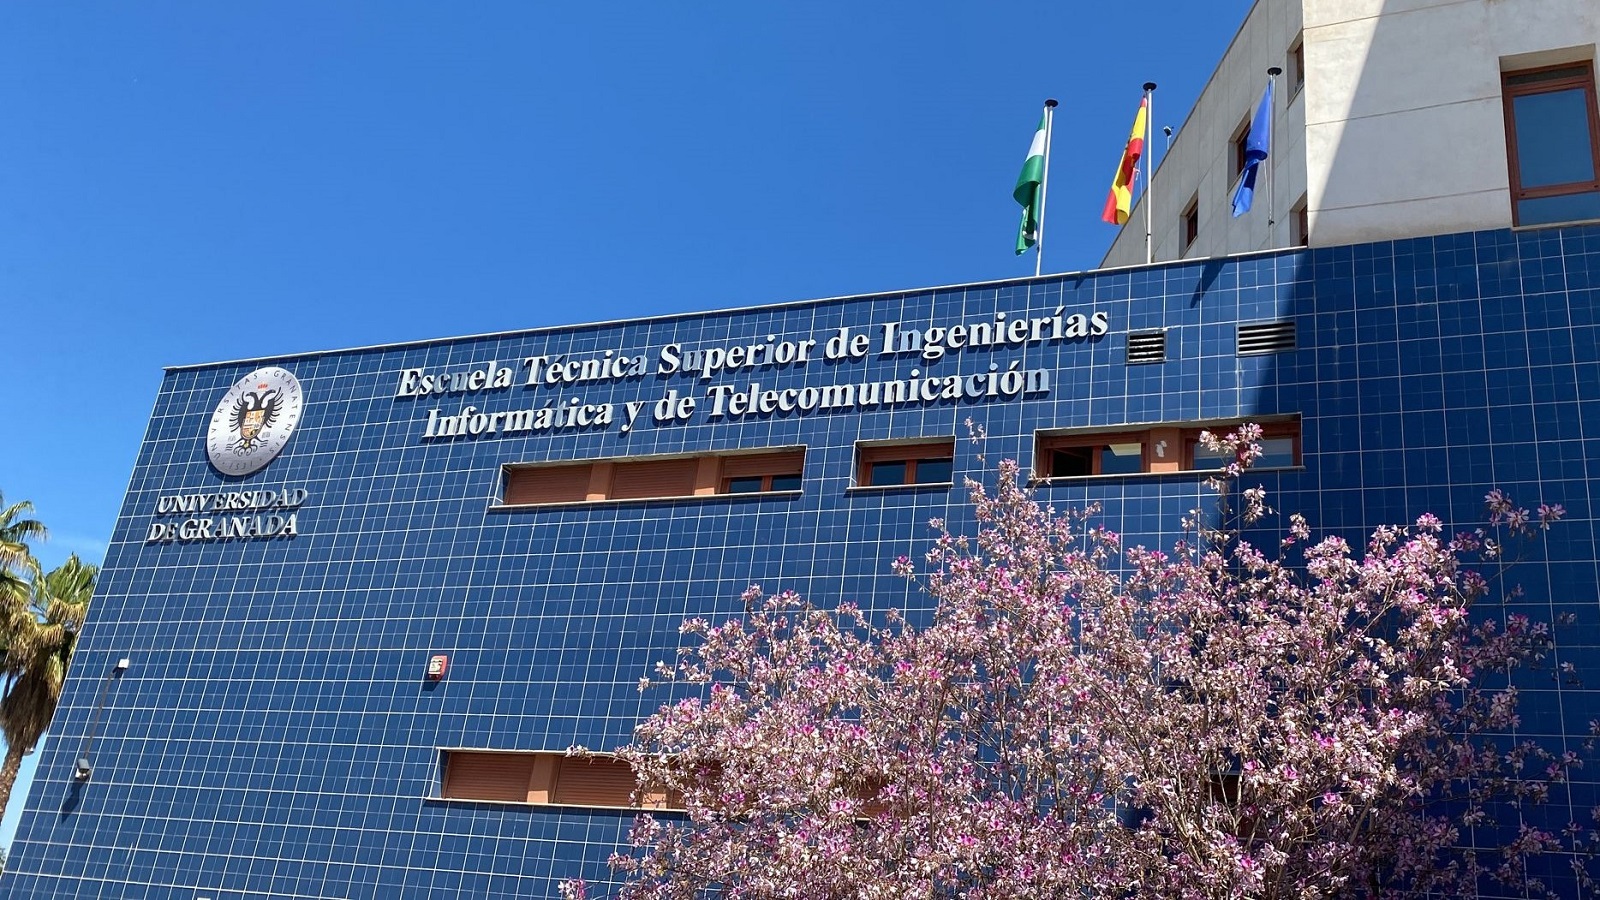 Escuela Técnica Superior de Ingenierías Informática y de Telecomunicación, Universidad de Granada